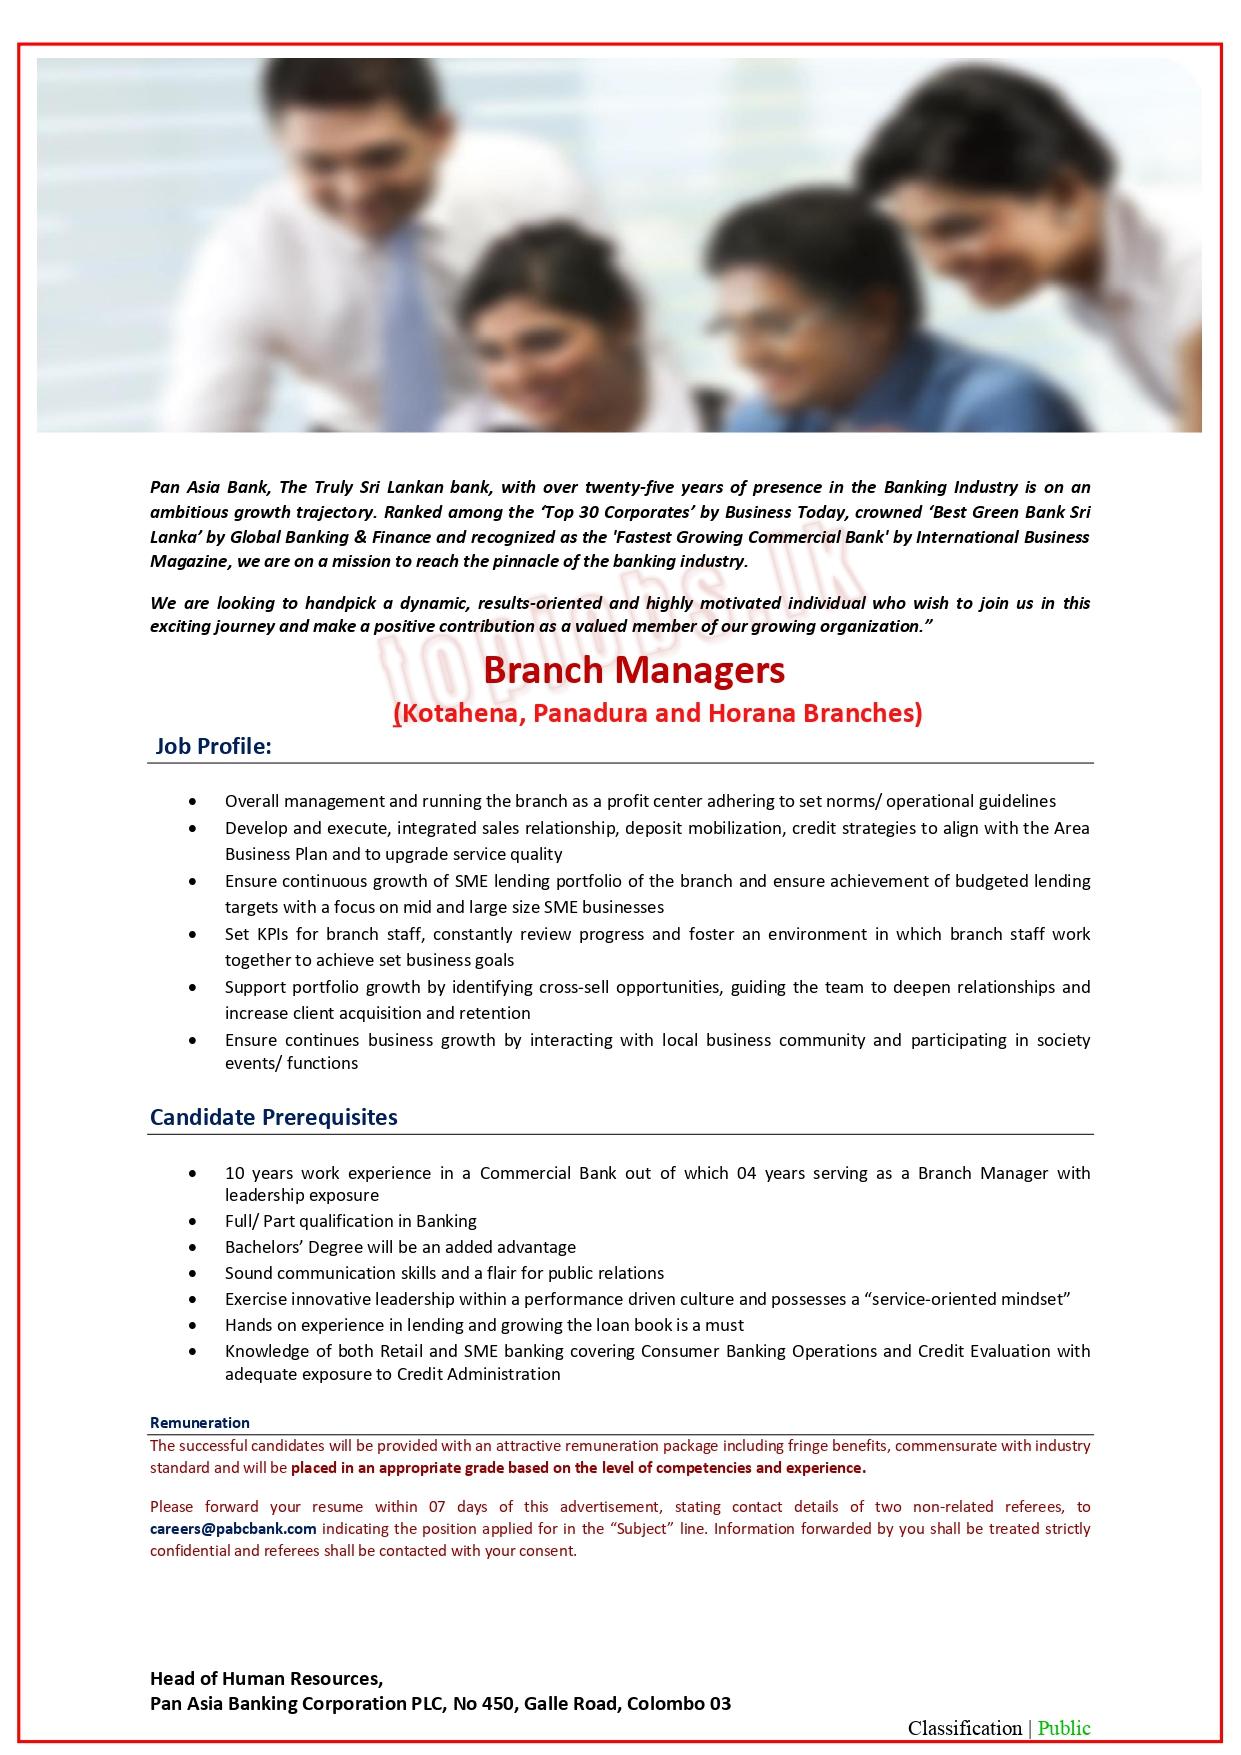 Pan Asia Bank Panadura Branch Manager Vacancies 2022